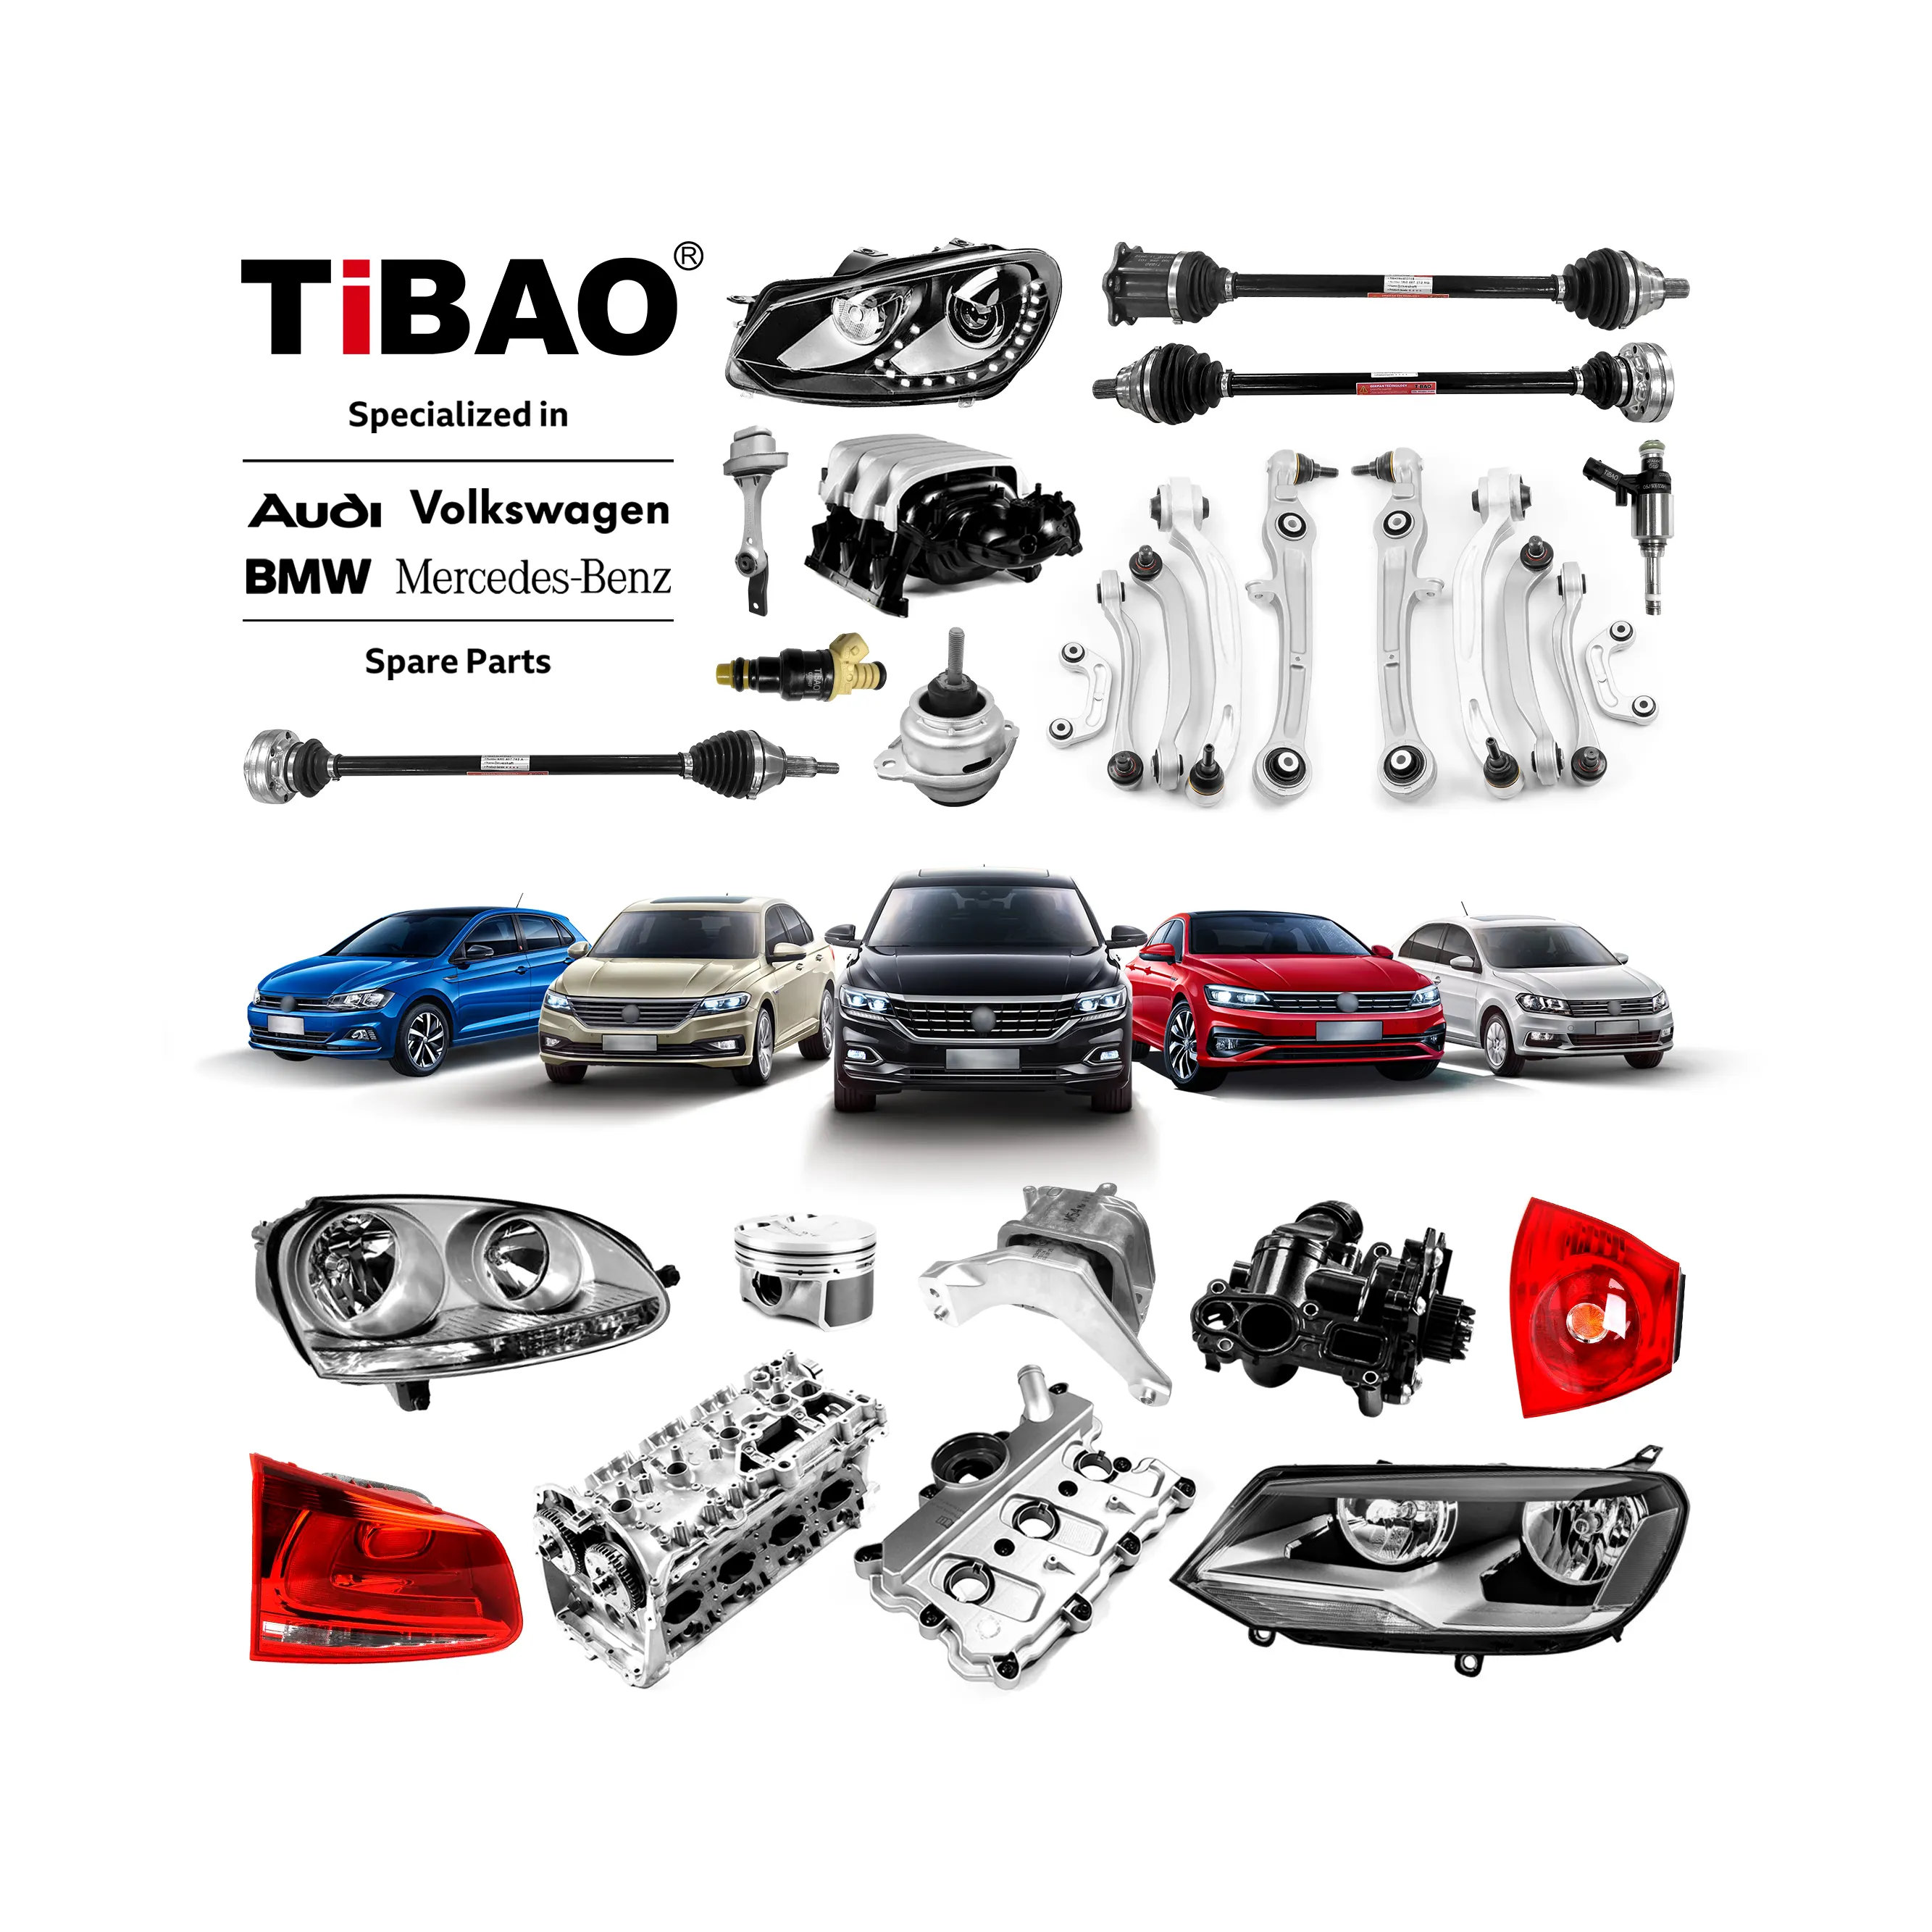 TiBAO OEM Automotive Full Range Peças de reposição para Audi A3 A5 Q7 Volkswagen Polo Jetta Passat BMW E46 E60 E90 Benz W204 W210 W211